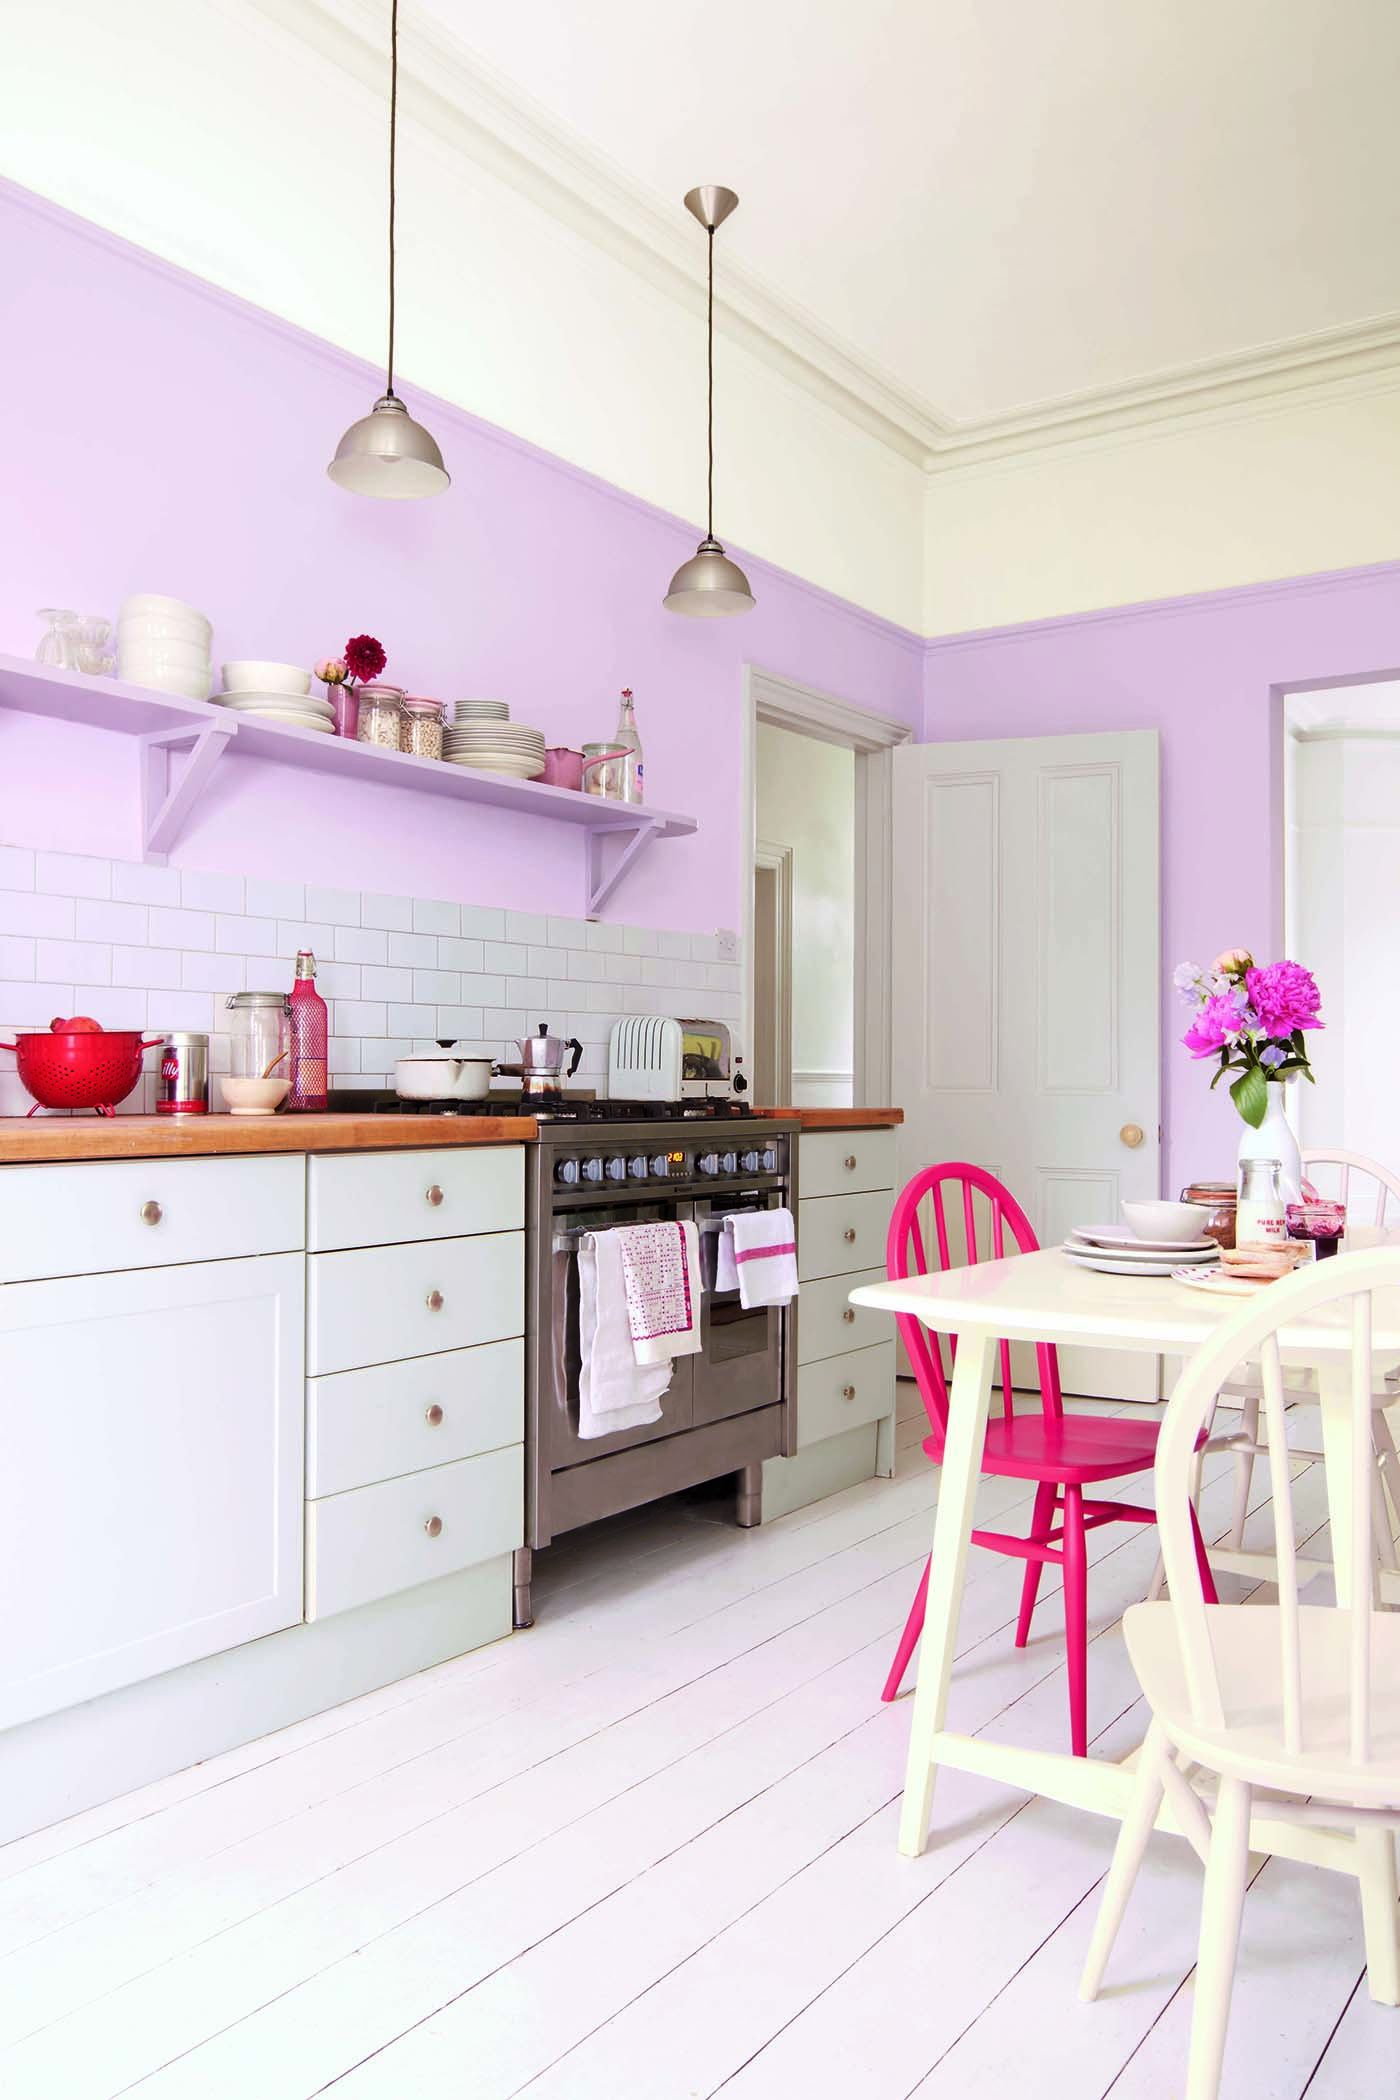 Table de cuisine pour cuisine violette